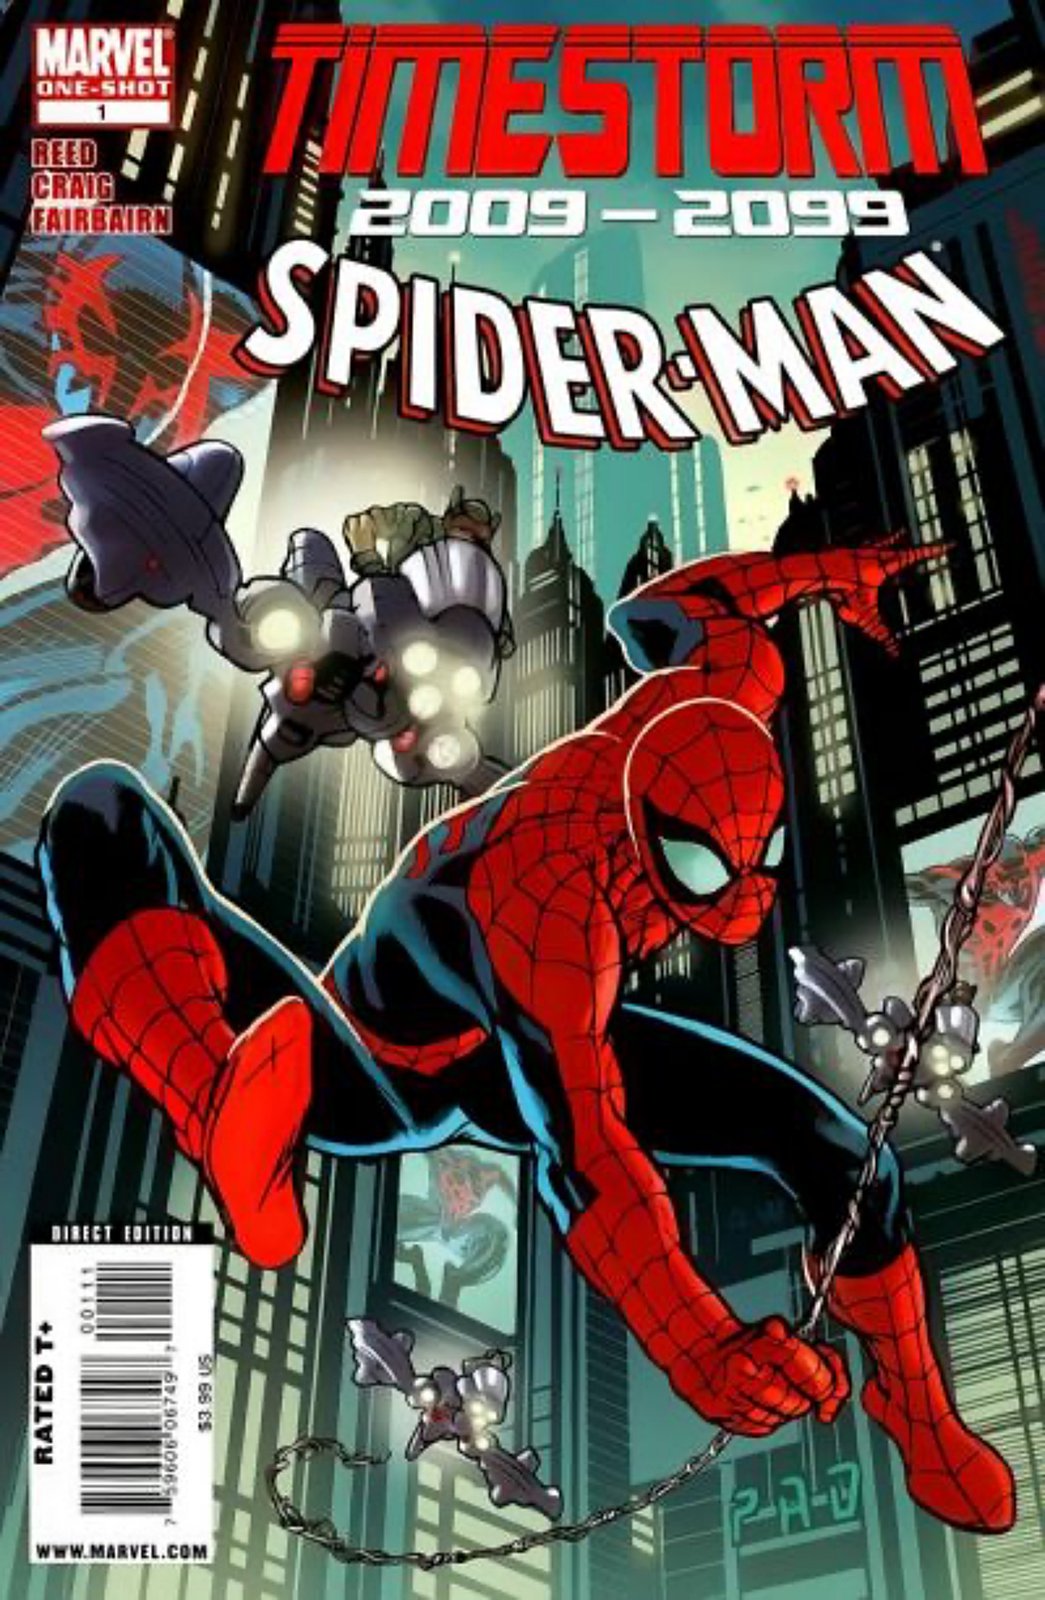 Timestorm 2009/2099: Spider-Man #1 (2009) Marvel Comics